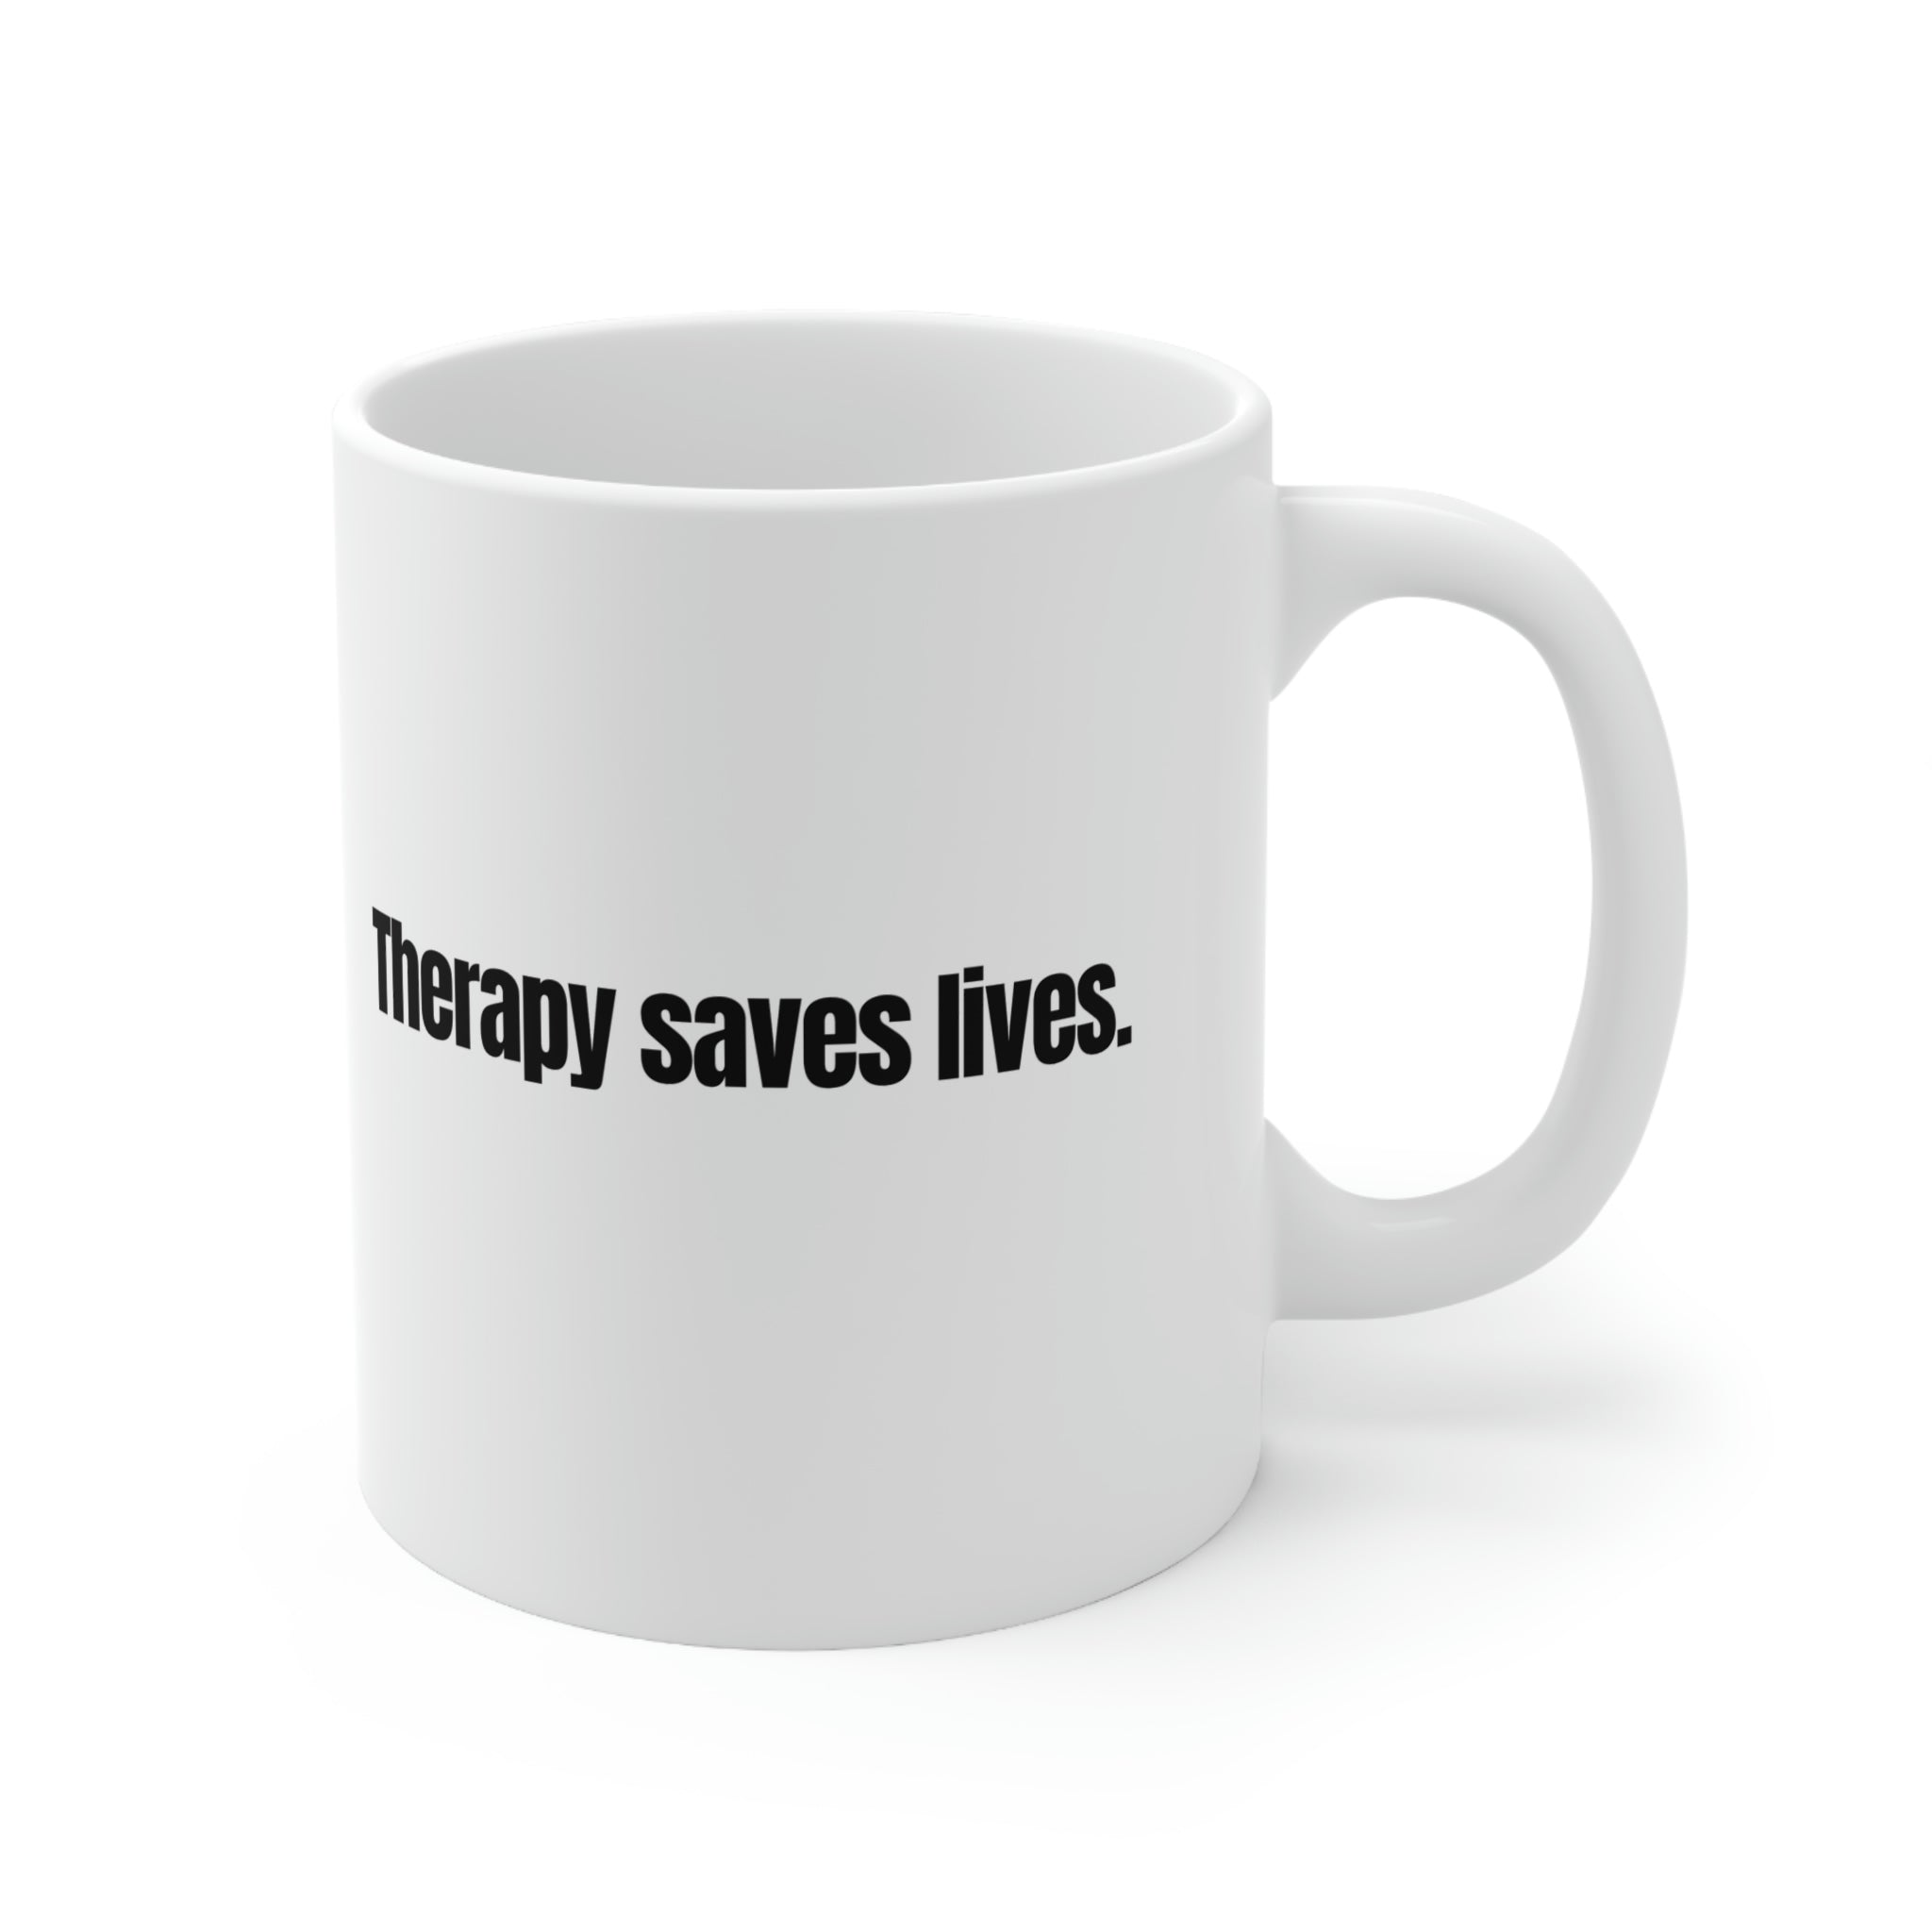 Therapy Saves Lives Ceramic Mug 11oz